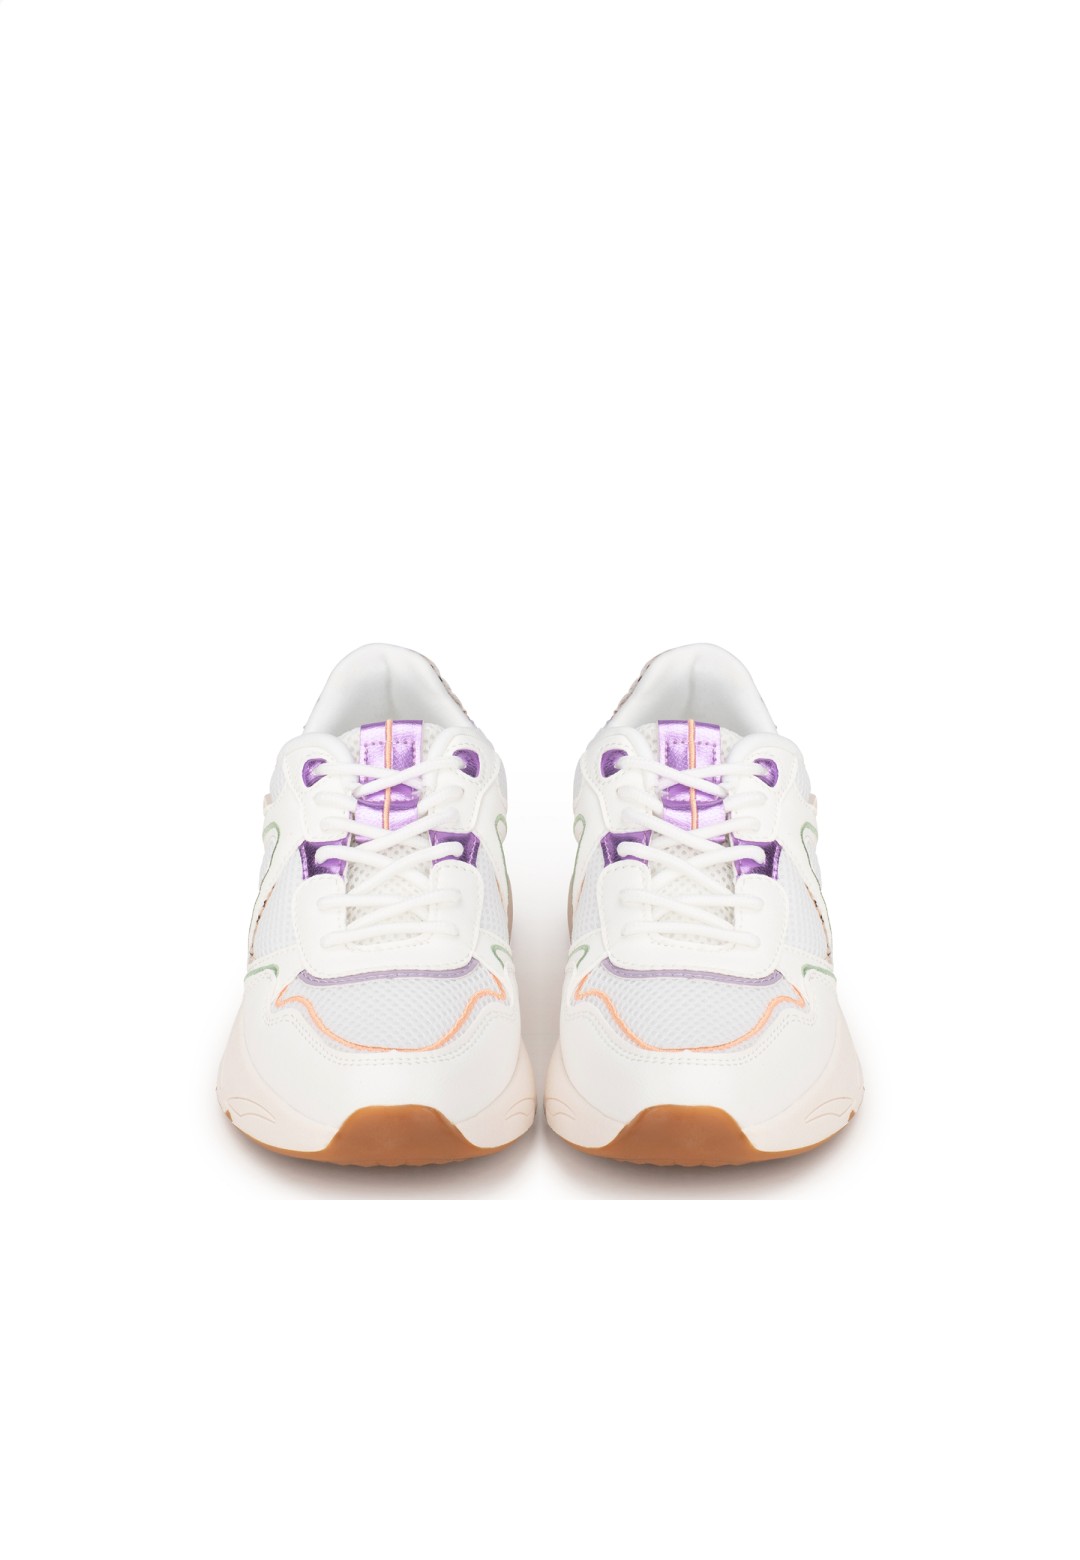 POSH by Poelman Dames Cathy Sneakers | De officiële POELMAN Webshop